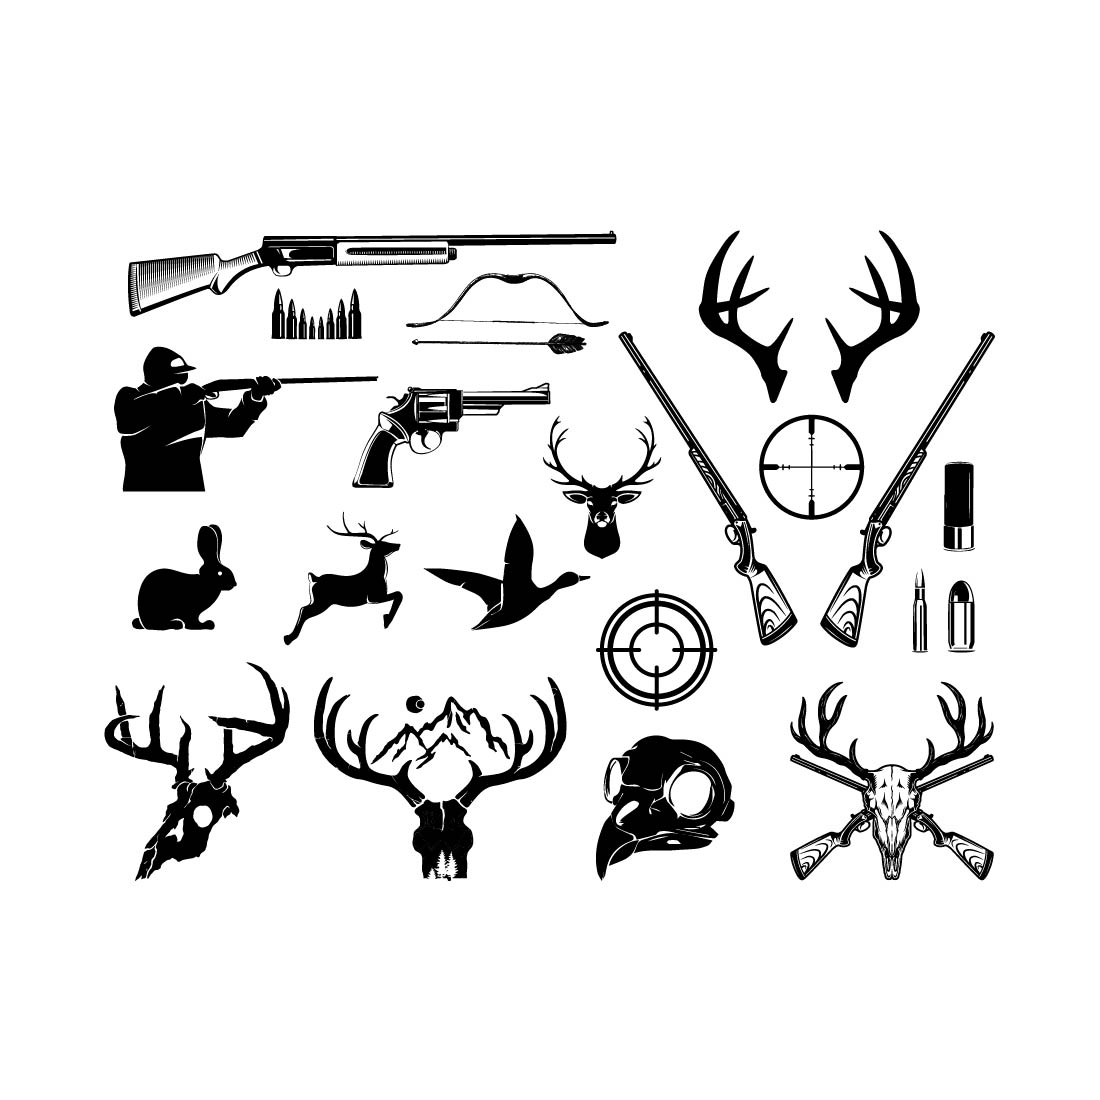 Hunting SVG Bundle, Hunting Dad Svg, Deer Hunting Svg, Hunting and Fishing Svg, Retro deer hunting Svg preview image.